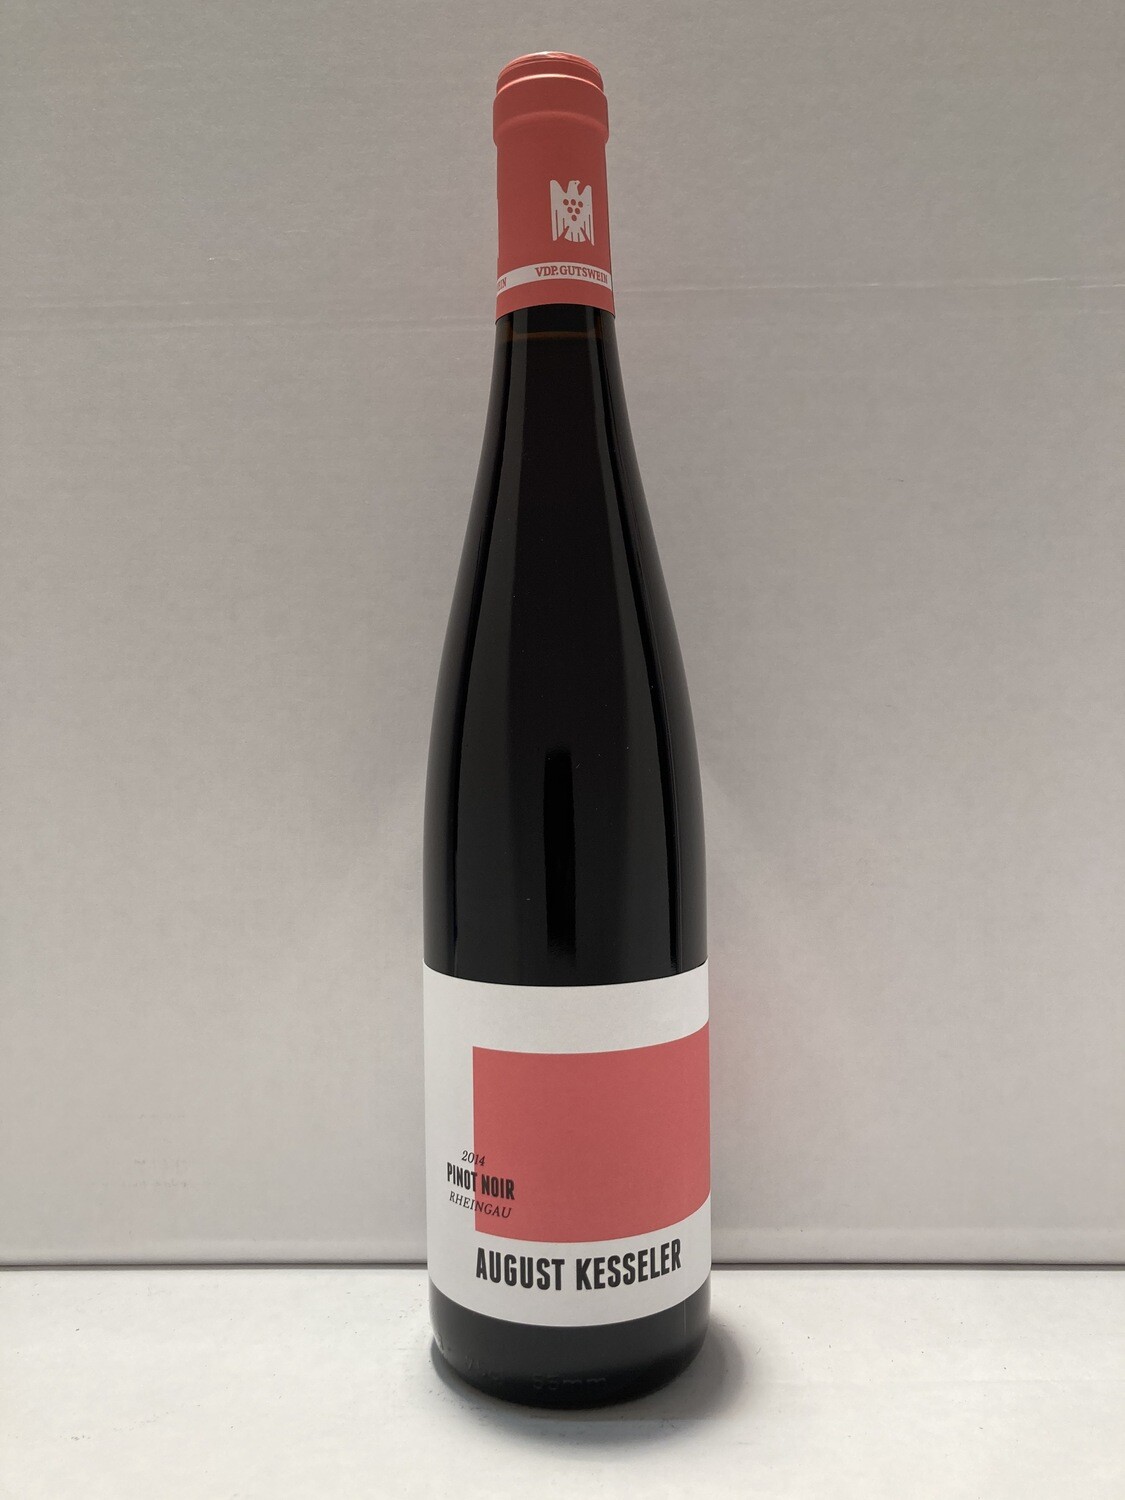 Pinot noir-2015 droog August Kesseler (Rheingau)